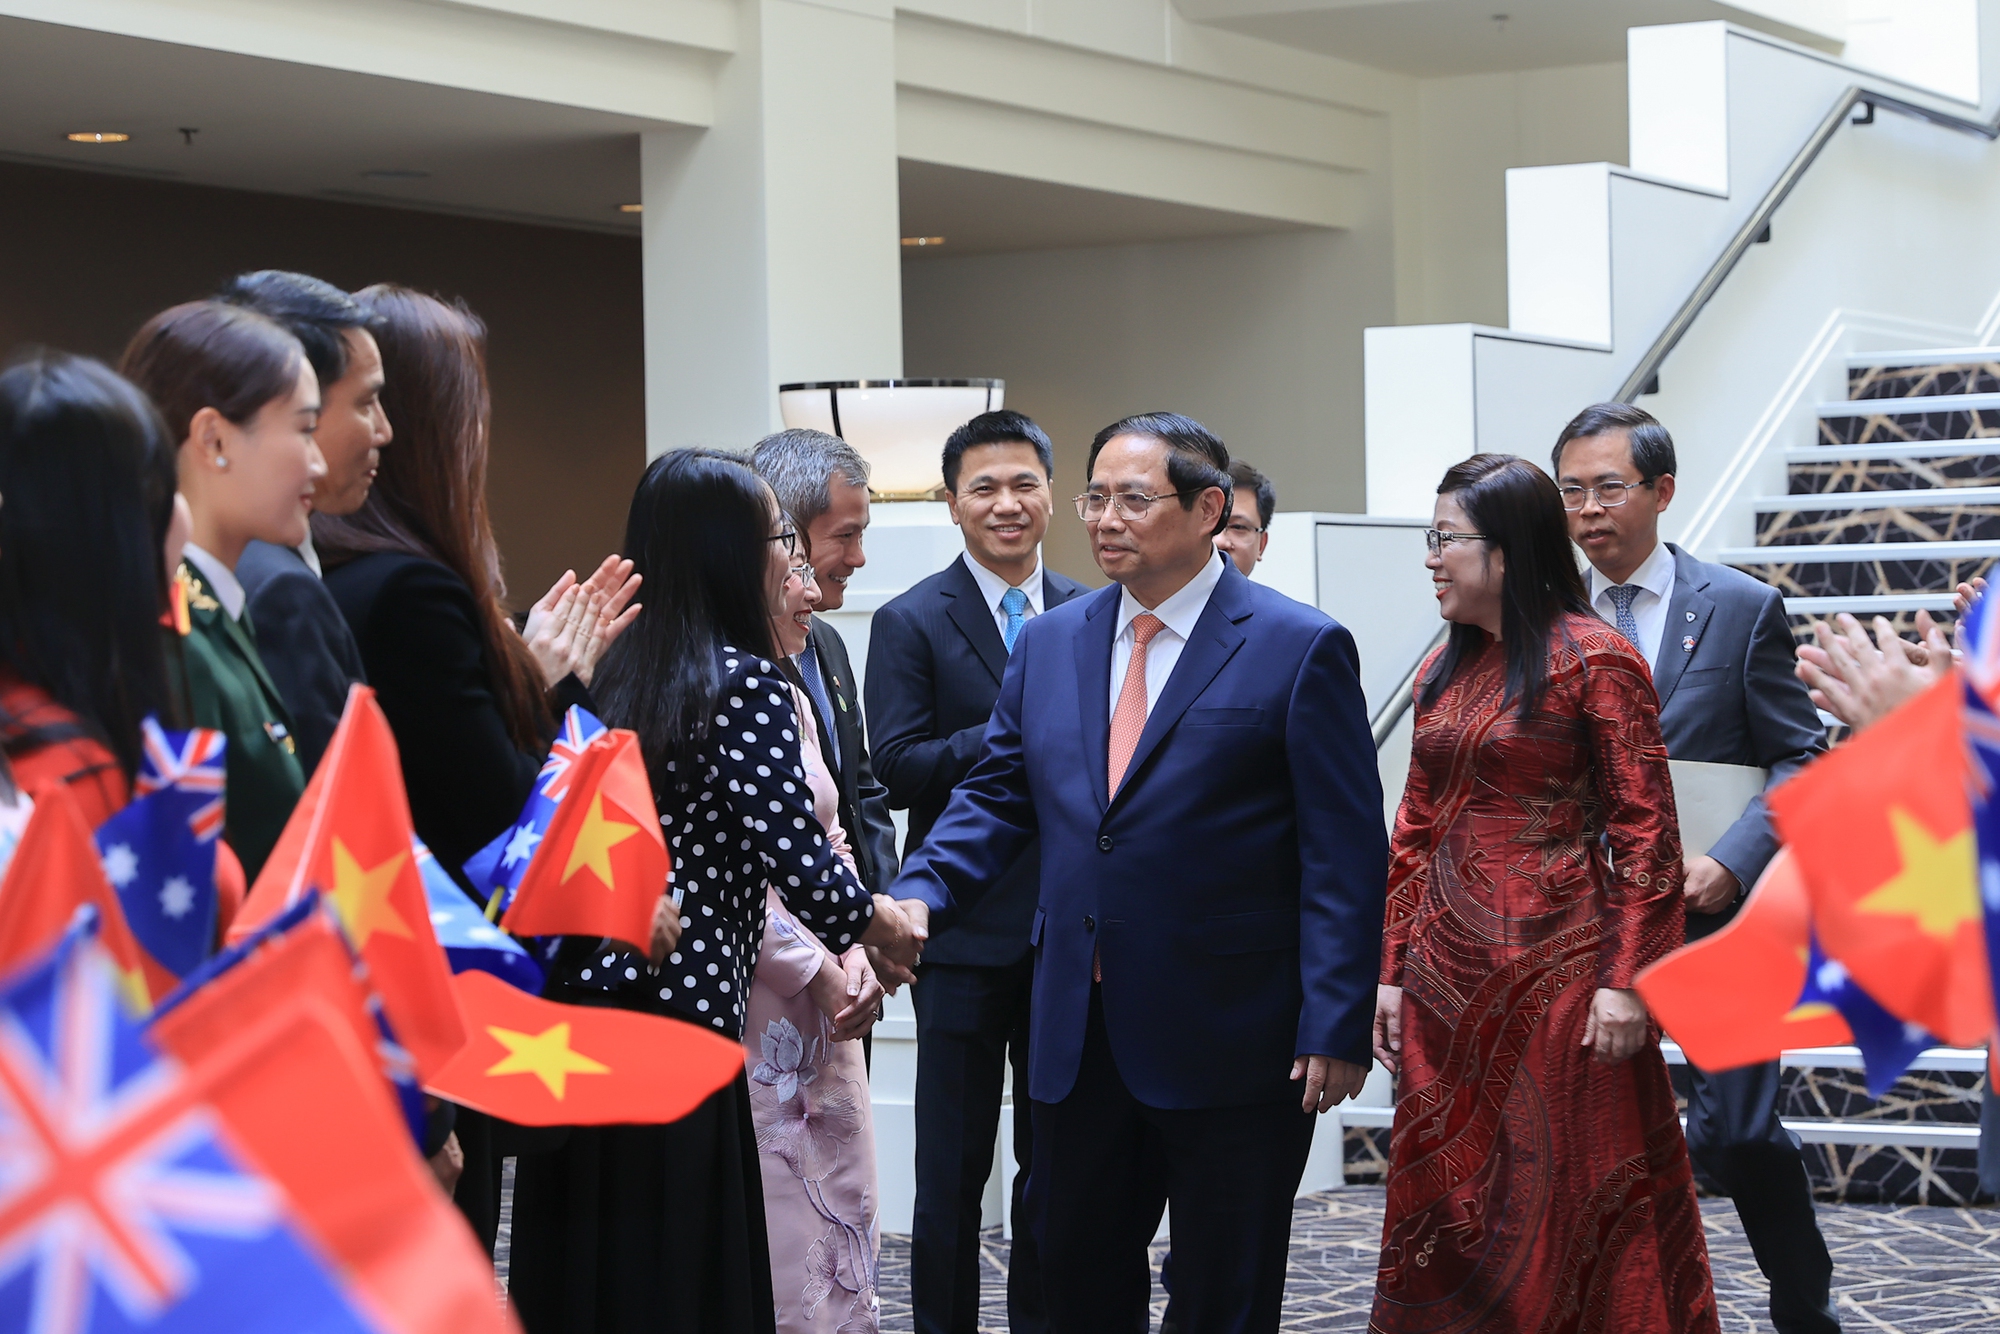 Thủ tướng Phạm Minh Chính cùng Phu nhân và đoàn đại biểu cấp cao Việt Nam đã tới thăm cán bộ, nhân viên cơ quan đại diện ngoại giao và đại diện cộng đồng người Việt tại Australia - Ảnh: VGP/Nhật Bắc